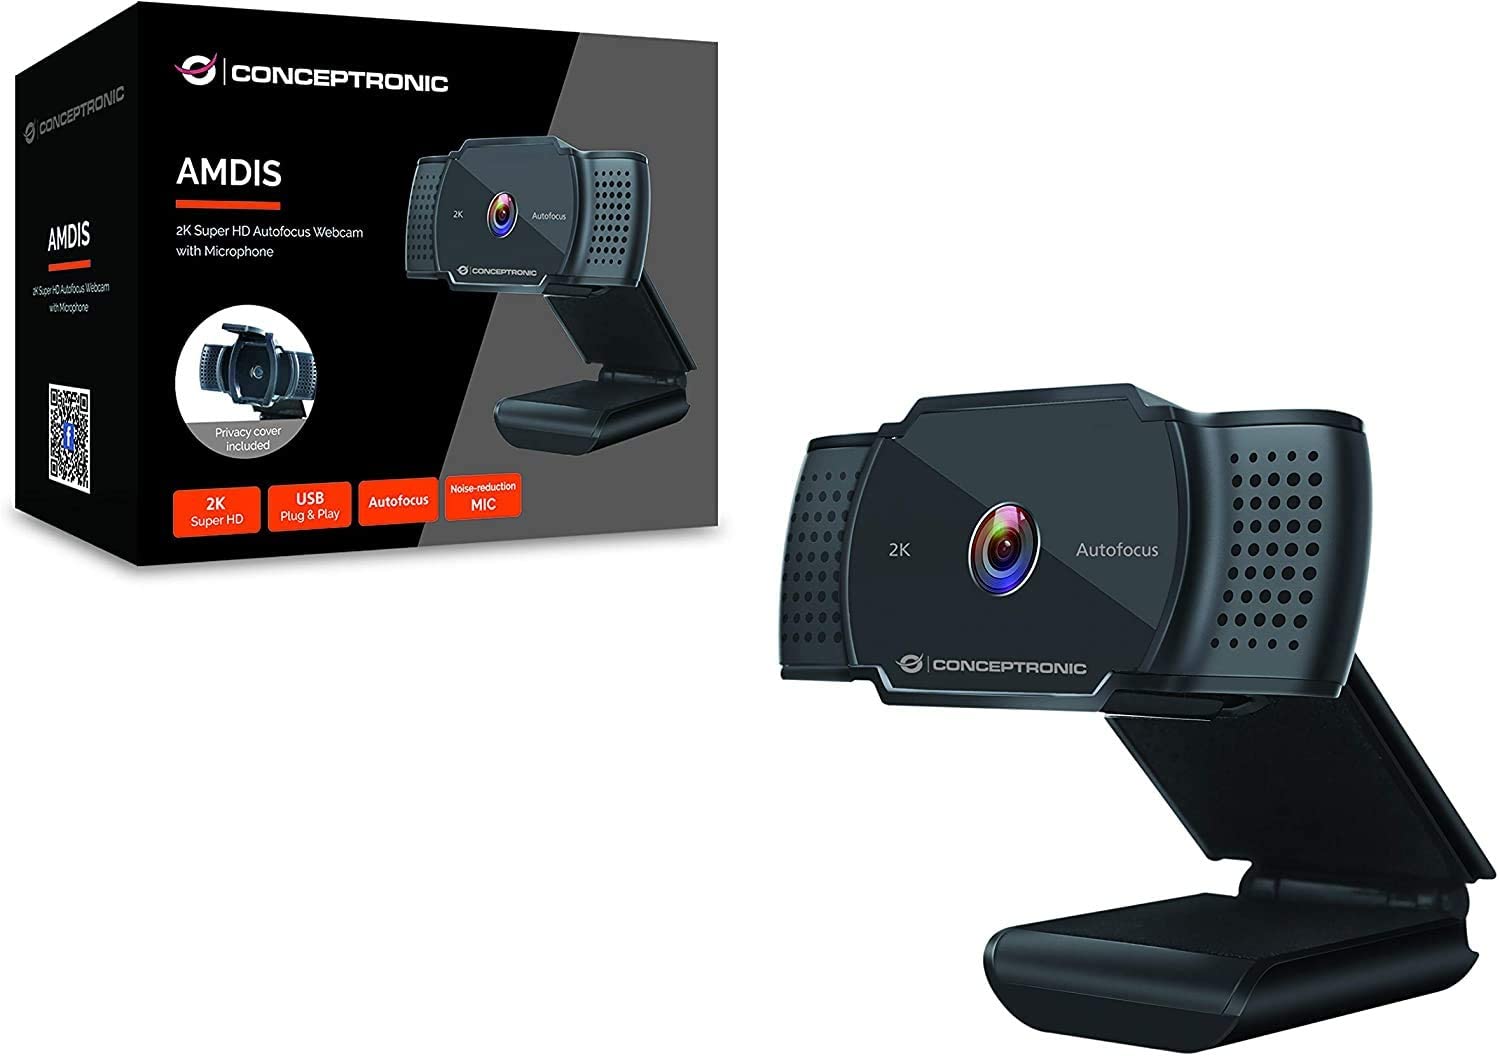 Webcam Conceptronic 2K Super HD USB 2.0 - Microphone intégré - Mise au point automatique - Cache de confidentialité